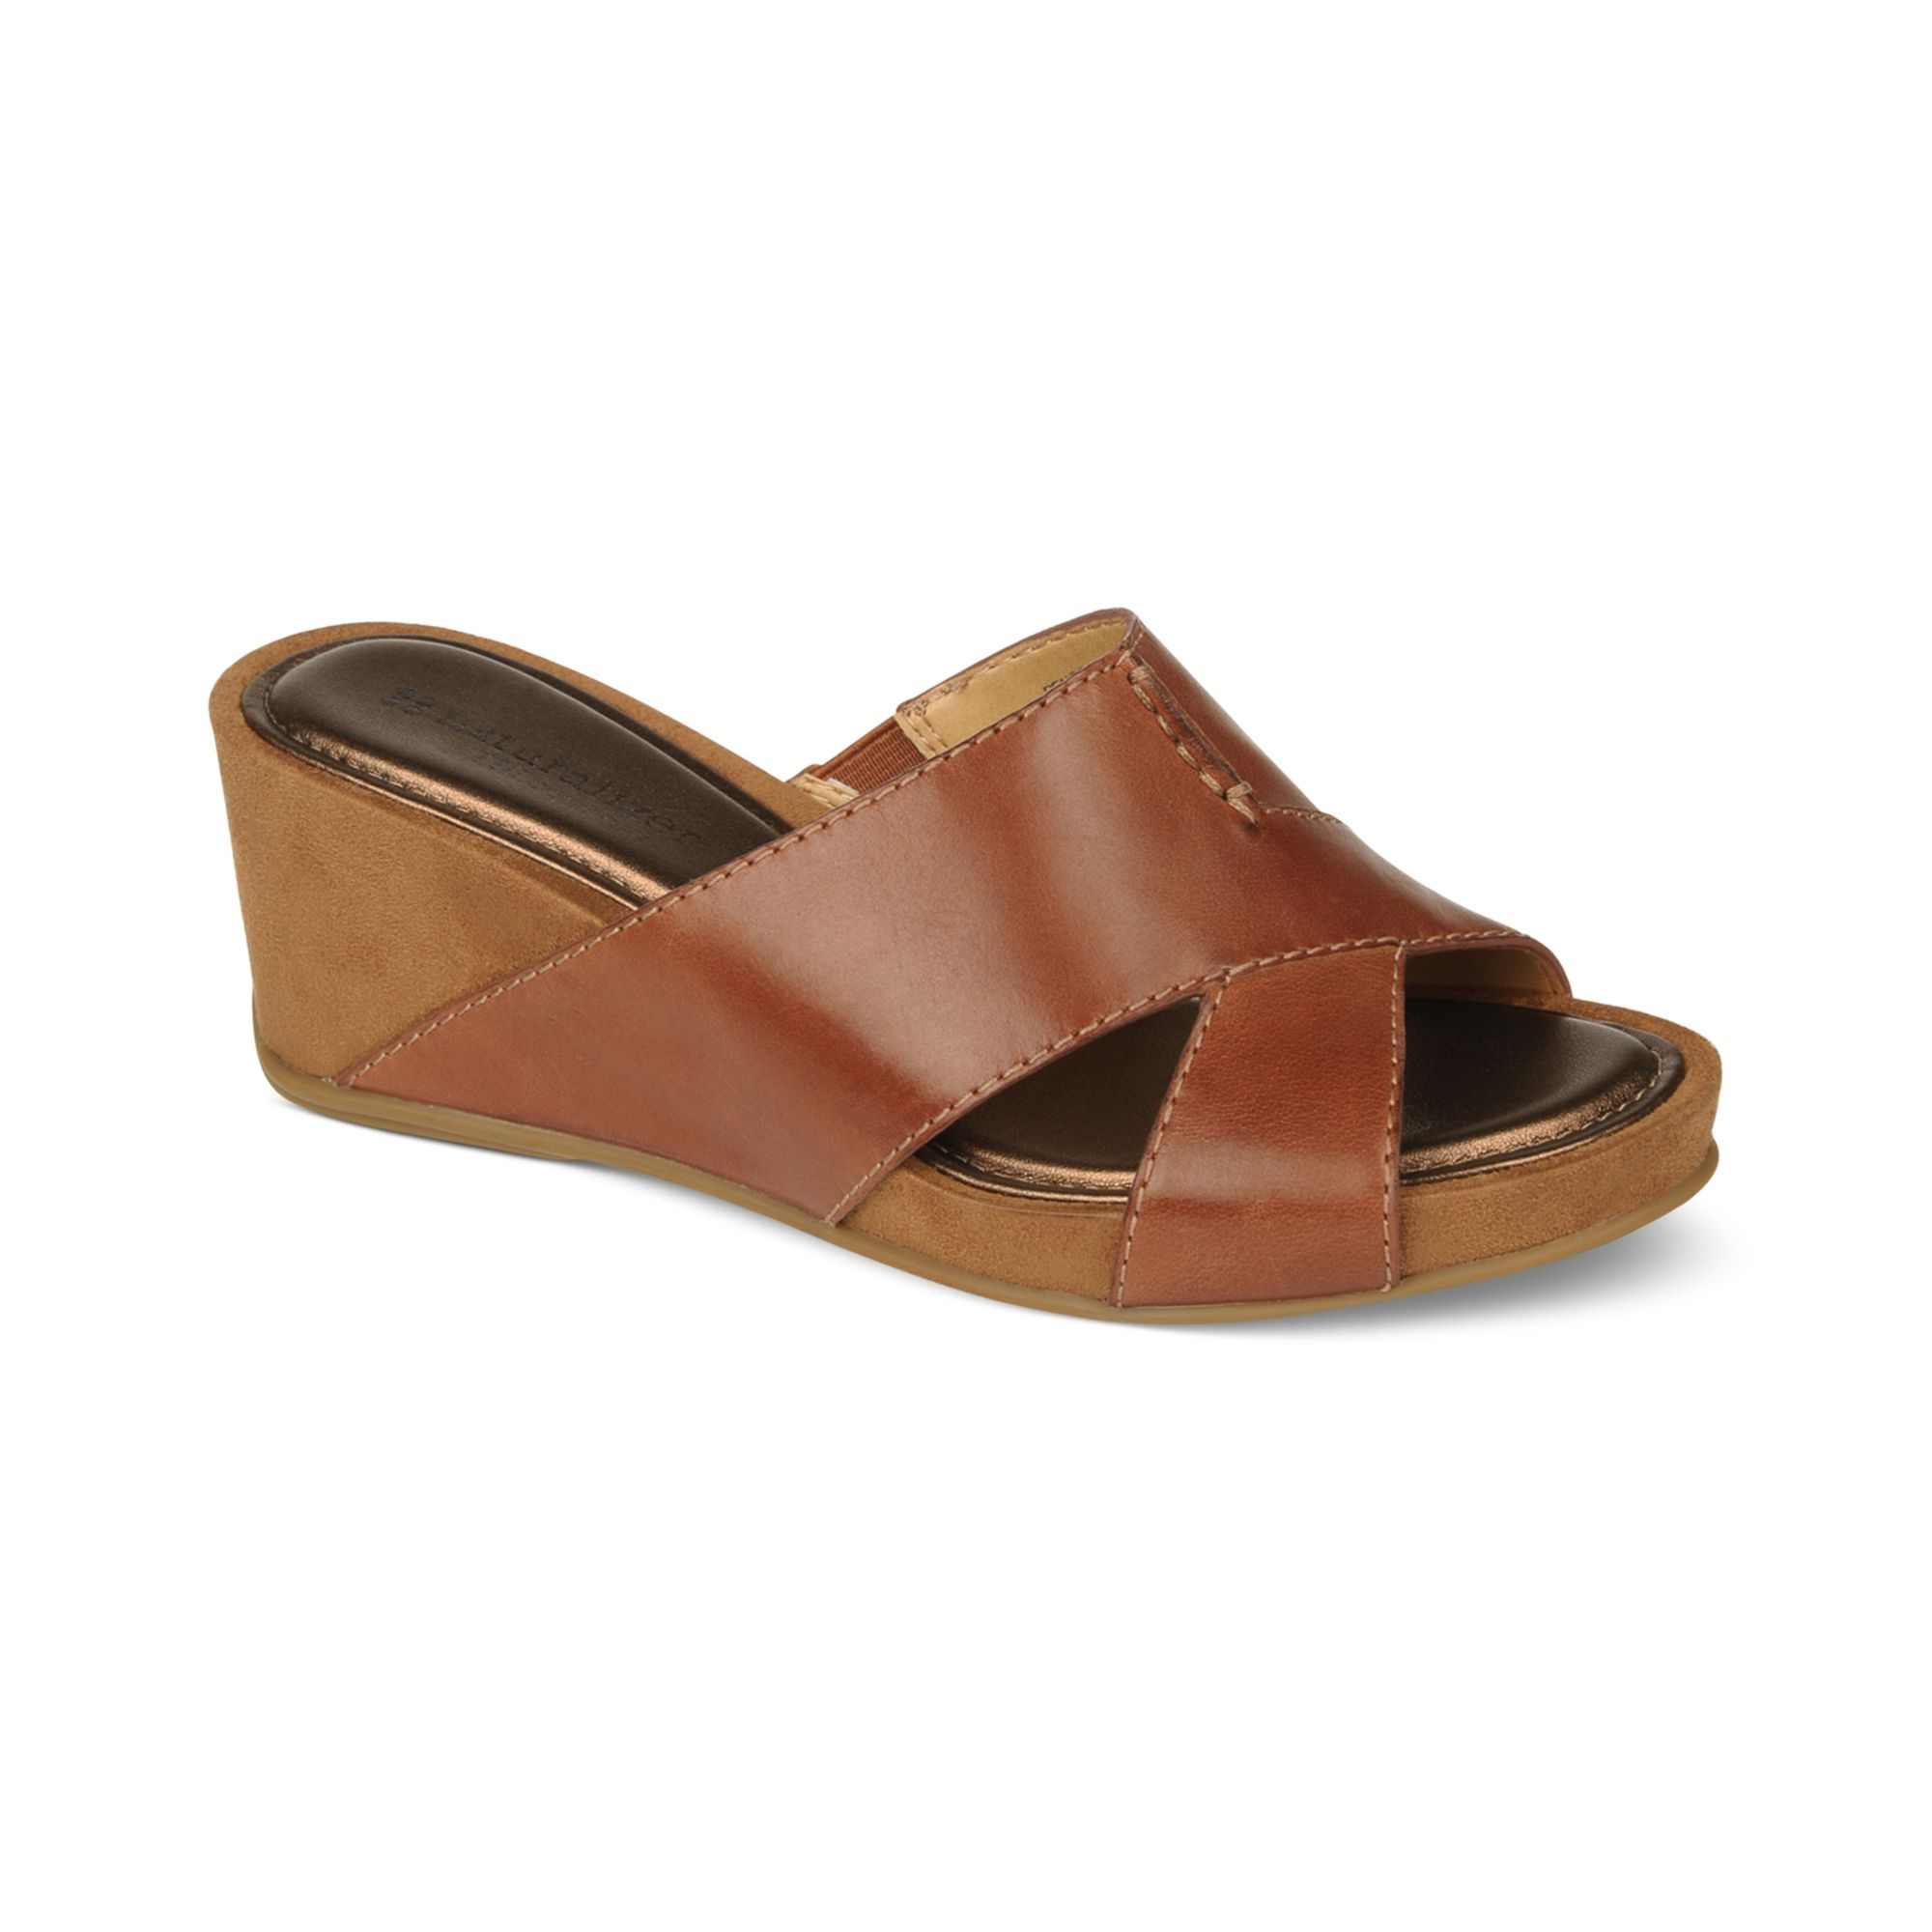 Naturalizer Pengo Platform Wedge Sandals in Brown (cognac) | Lyst